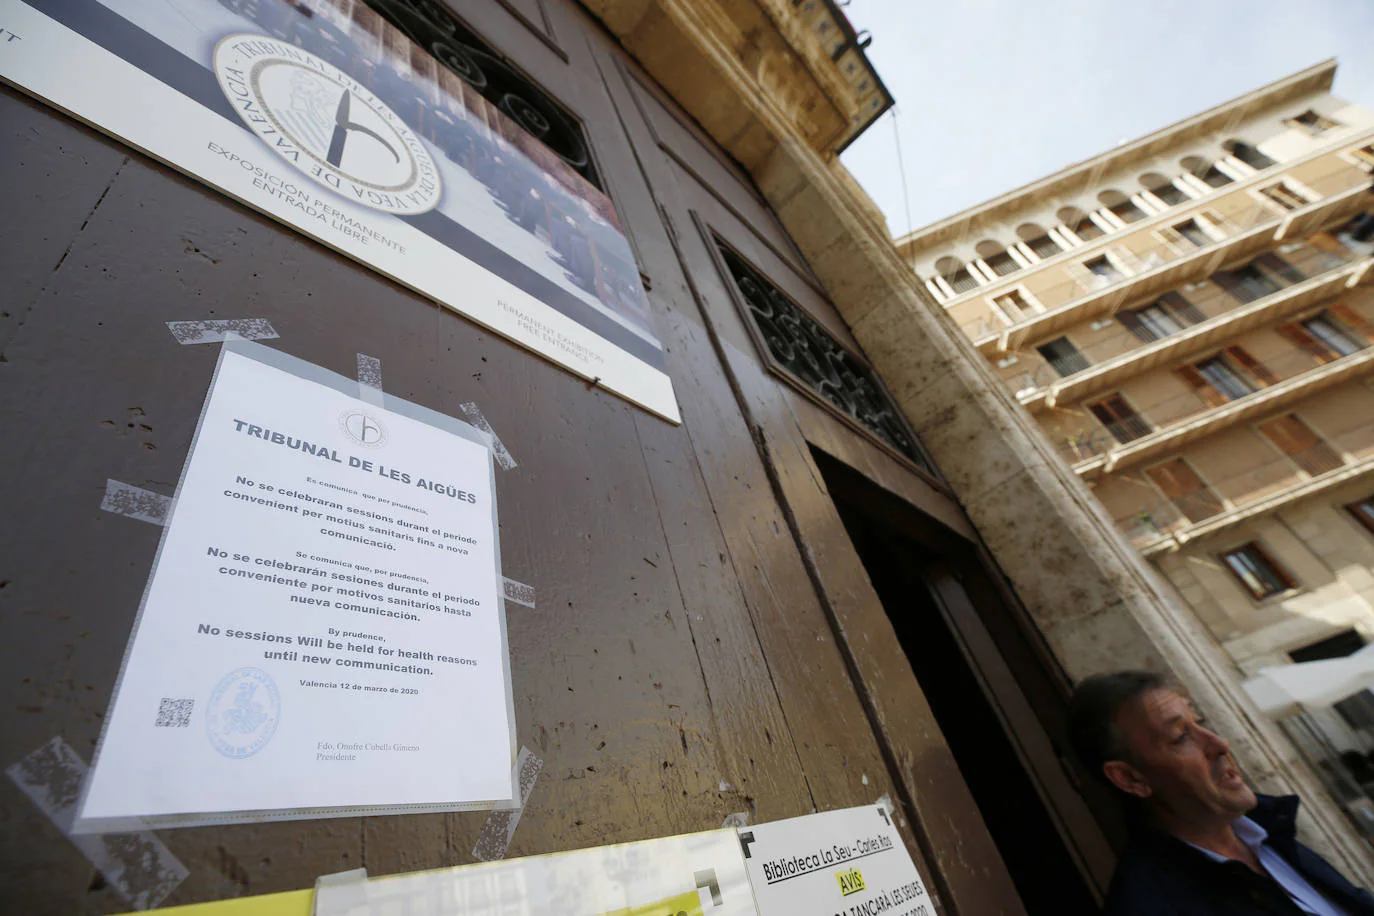 Cartel en la puerta del Tribunal de les Aigües que anuncia la cancelación de sesiones por la crisis sanitaria.